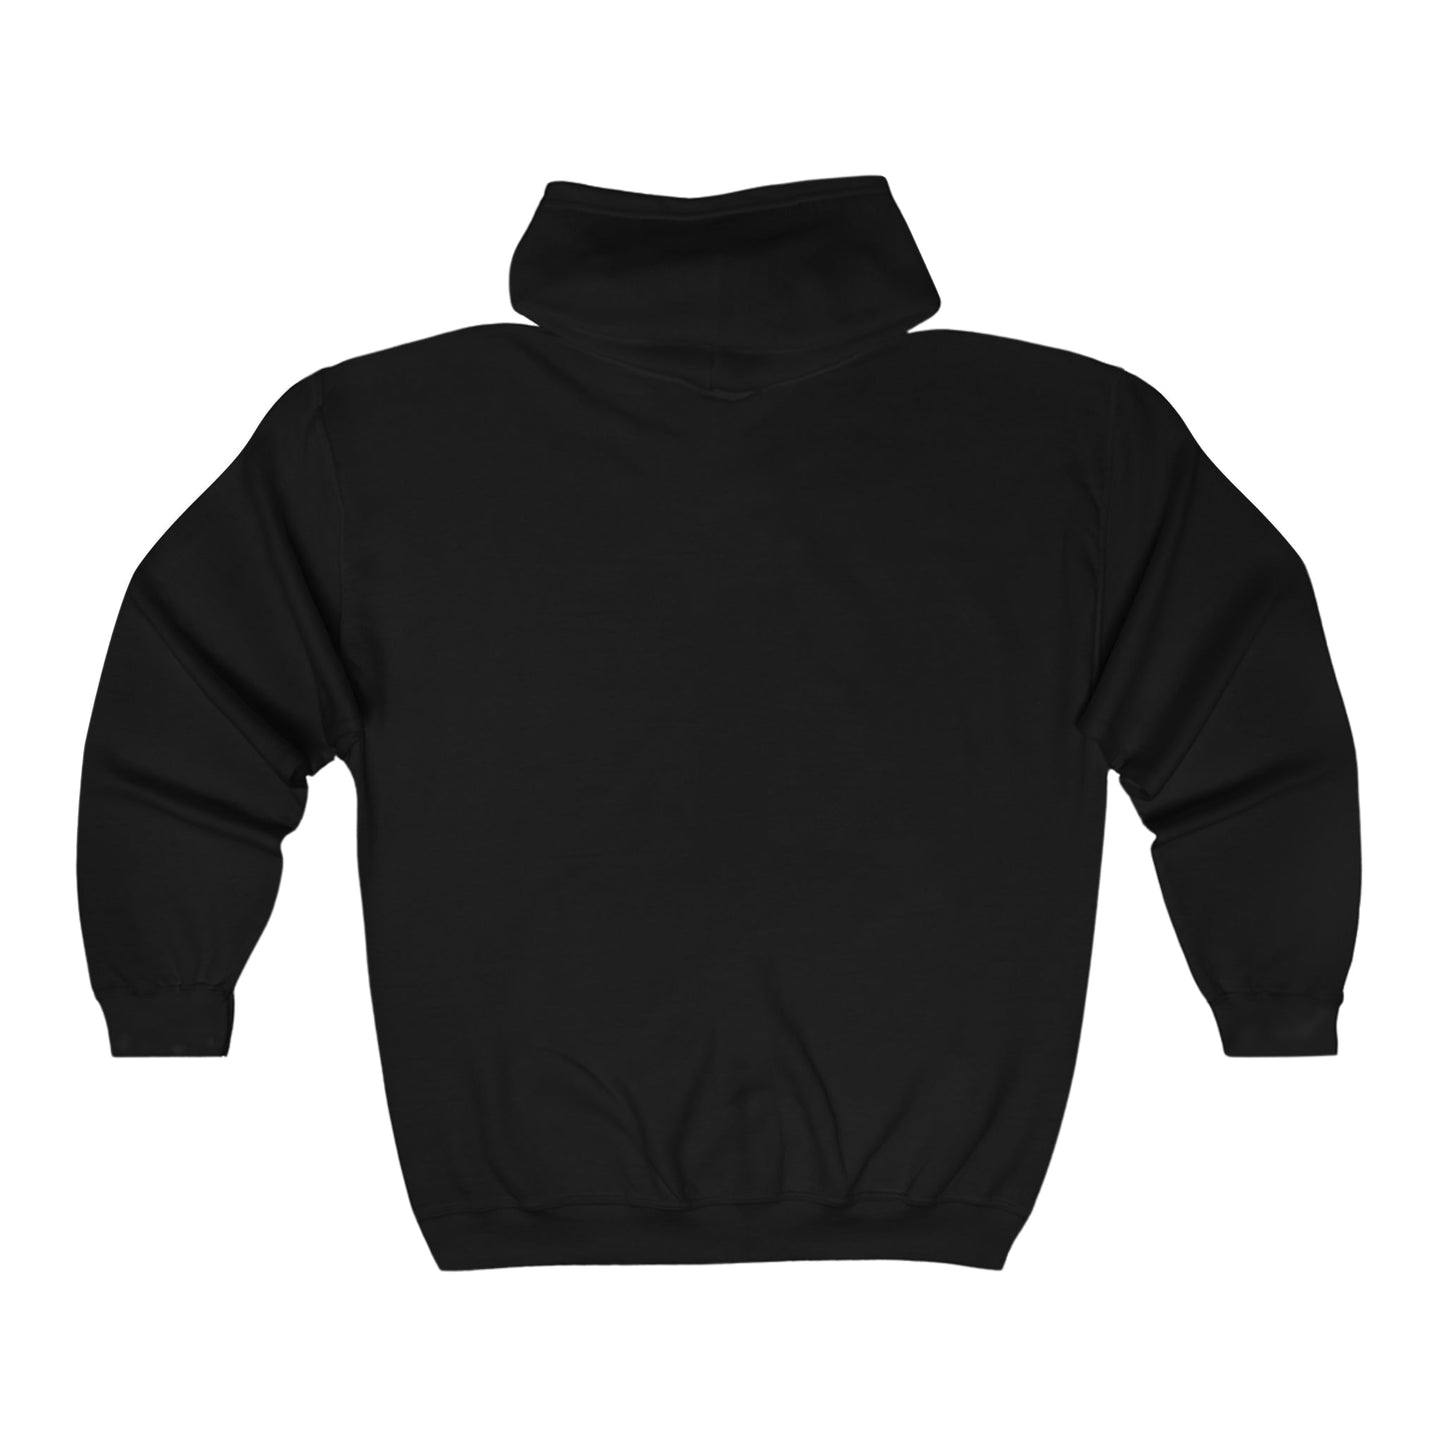 Maine Coon | Zip-up Sweatshirt - Detezi Designs-10903774072876893529